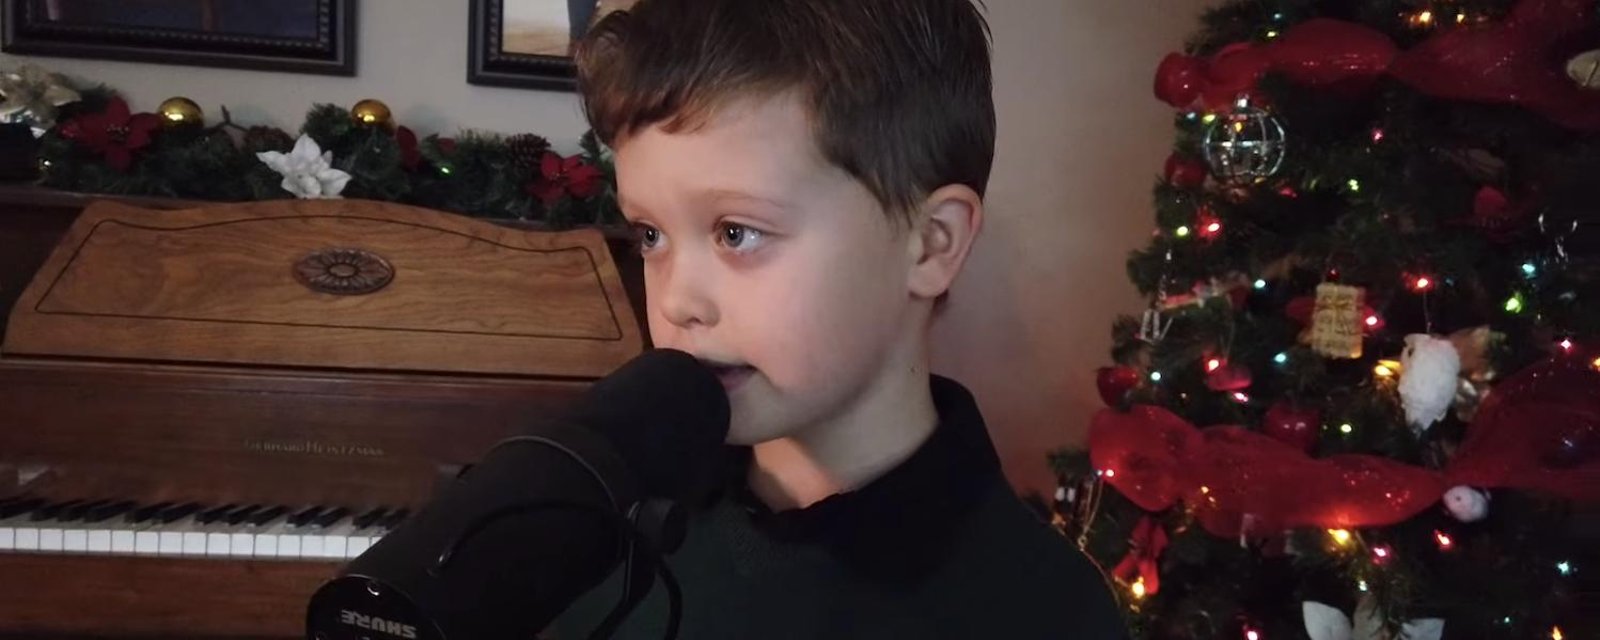 Le jeune Mathias nous donne les larmes aux yeux en chantant Noël c'est l'amour